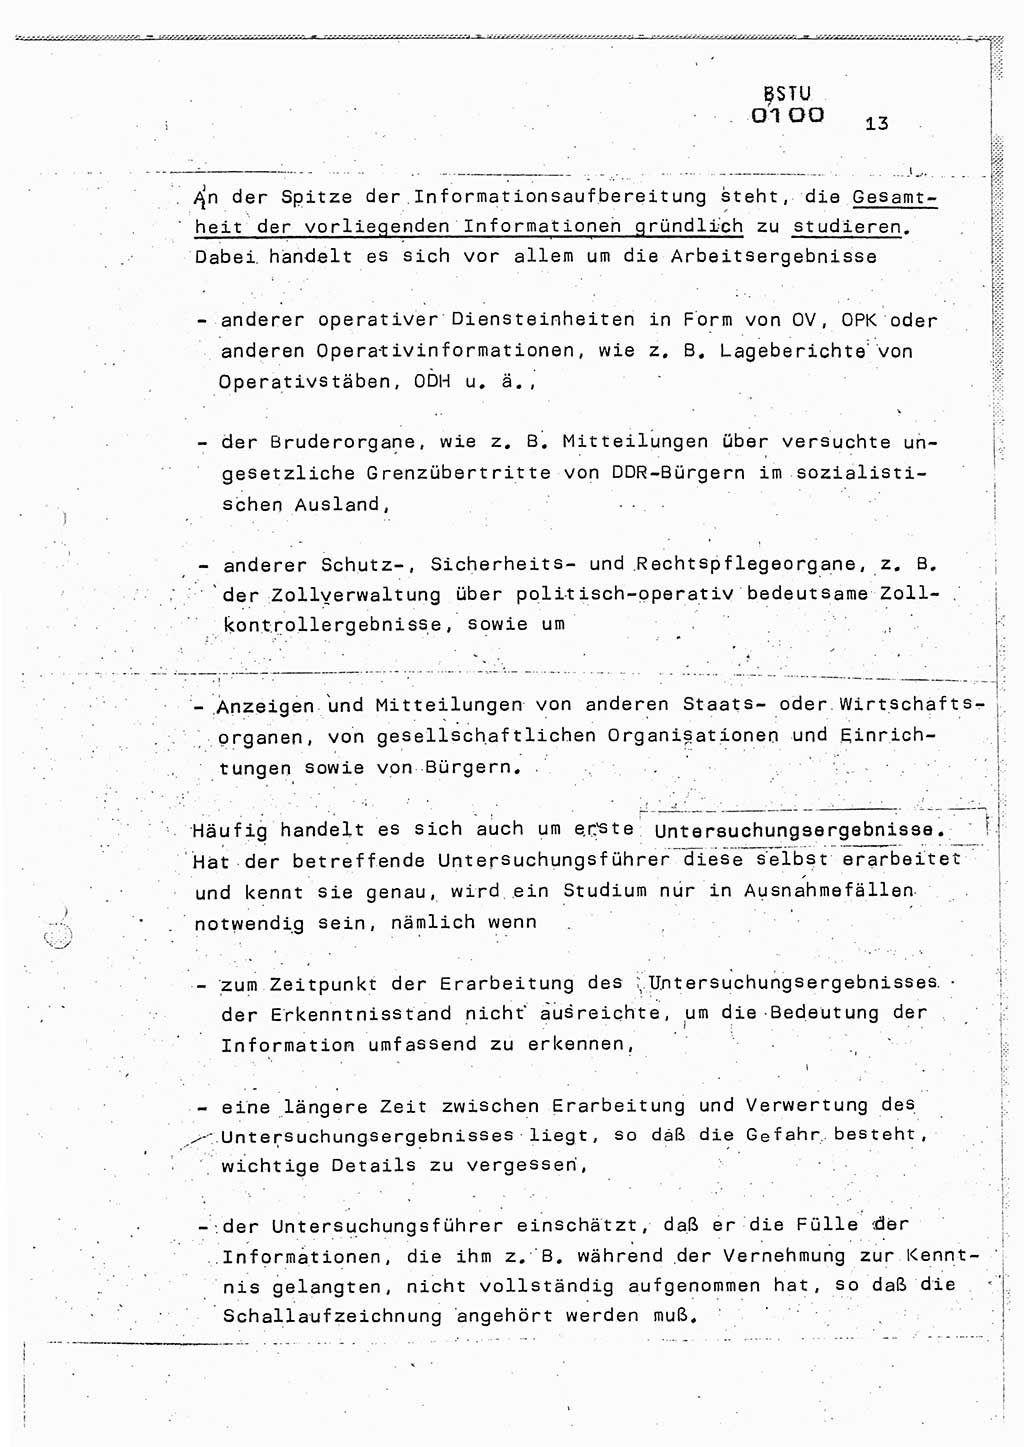 Lektion Ministerium für Staatssicherheit (MfS) [Deutsche Demokratische Republik (DDR)], Hauptabteilung (HA) Ⅸ, Berlin 1987, Seite 13 (Lekt. Pln. Bearb. EV MfS DDR HA Ⅸ /87 1987, S. 13)